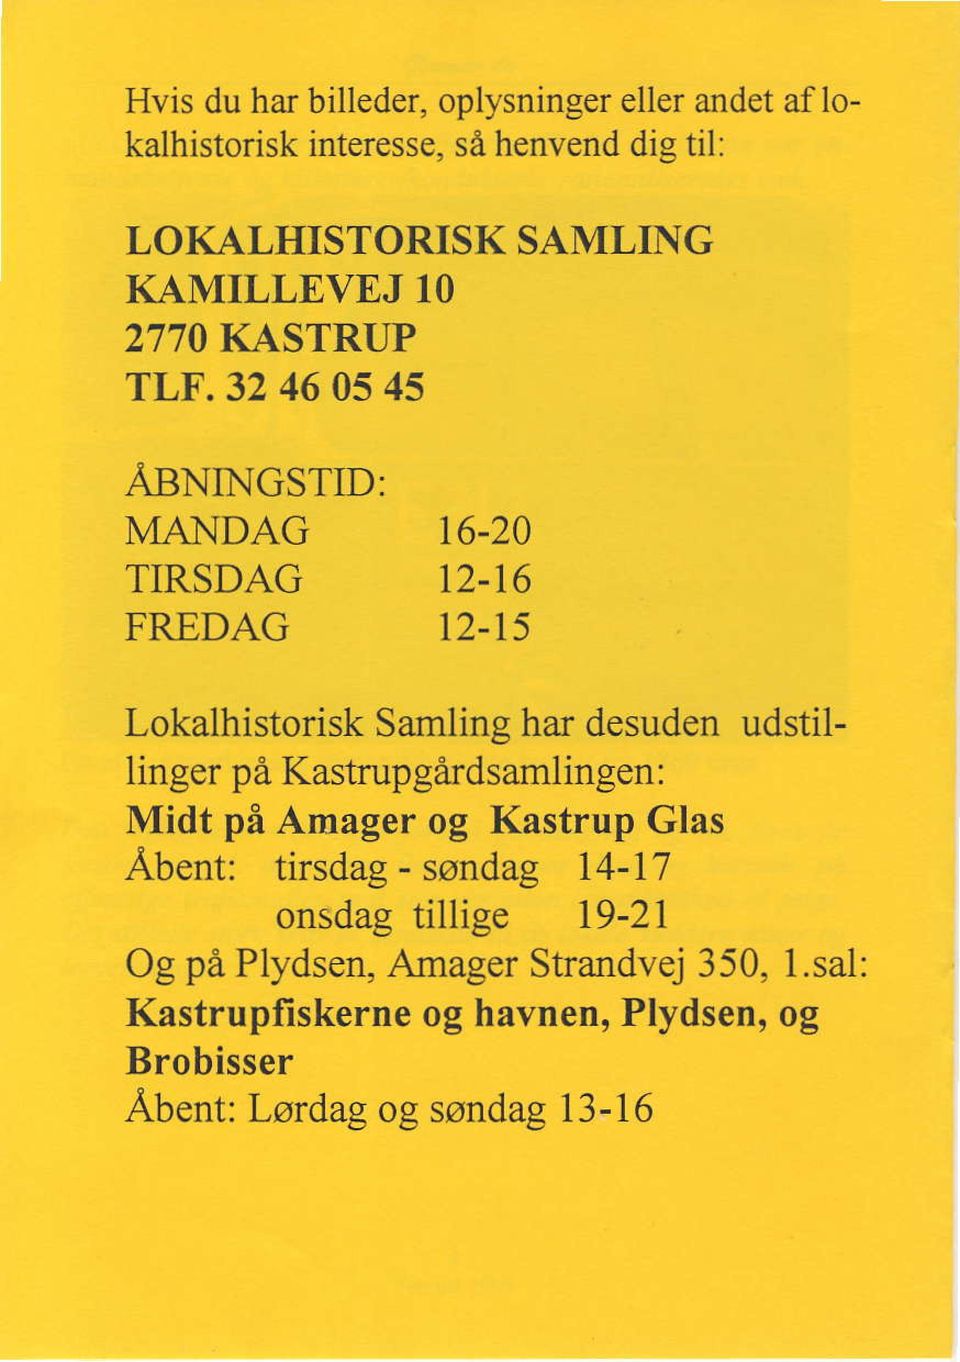 15 Lokalhistorisk Samling har desuden udstillinger pd Kastrupgardsamlingen: Midt pi Amager og Kastrup Glas Abent: tirsdag